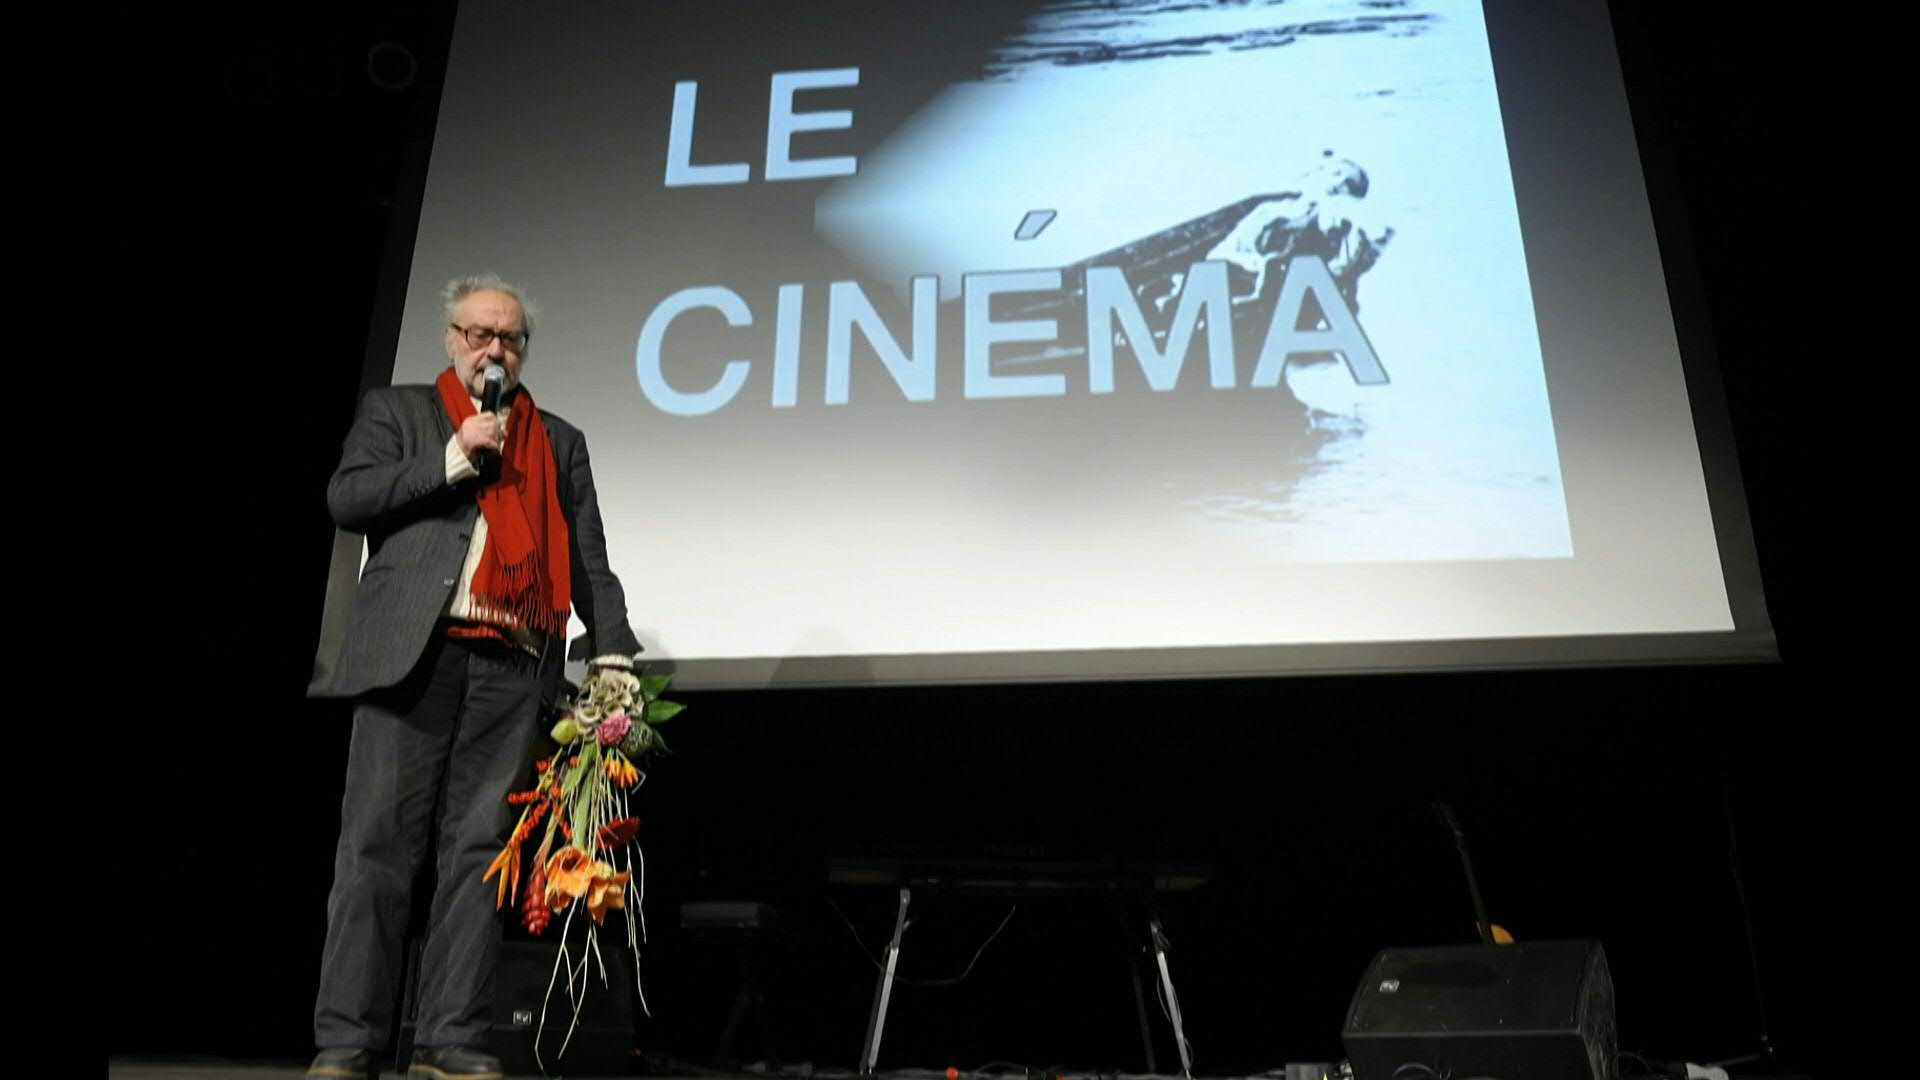 Jean-Luc Godard, uno de los padres de la Nouvelle Vague, murió "de manera apacible" a los 91 años en su domicilio en la pequeña comuna de Rolle en Suiza